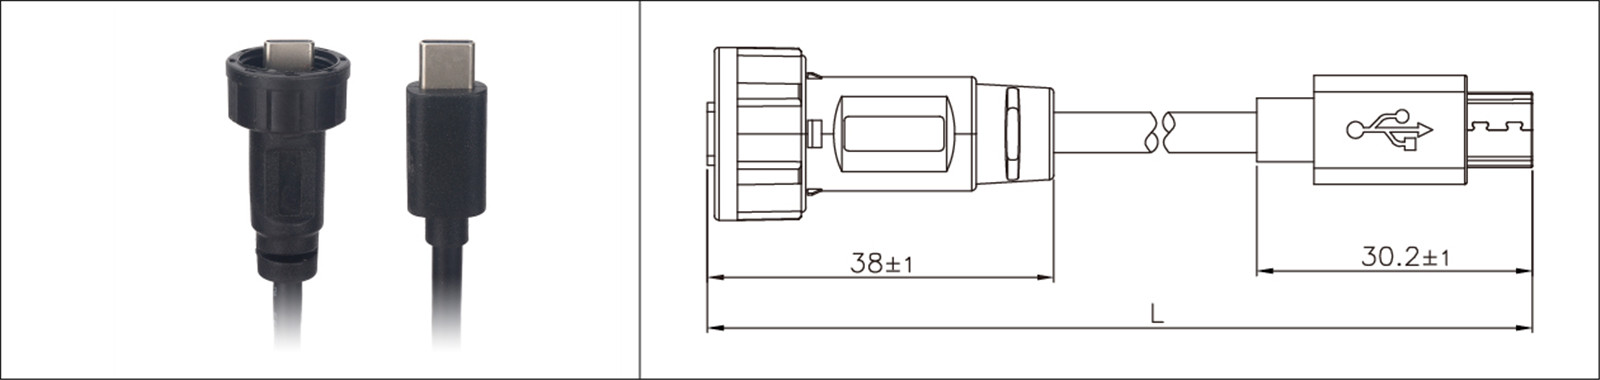 マイクロ USB パネル マウント タイプ 2.0 3.0 メスおよびオス防水 IP67 オーバーモールド延長ケーブル産業用 Connecto-02 (14)